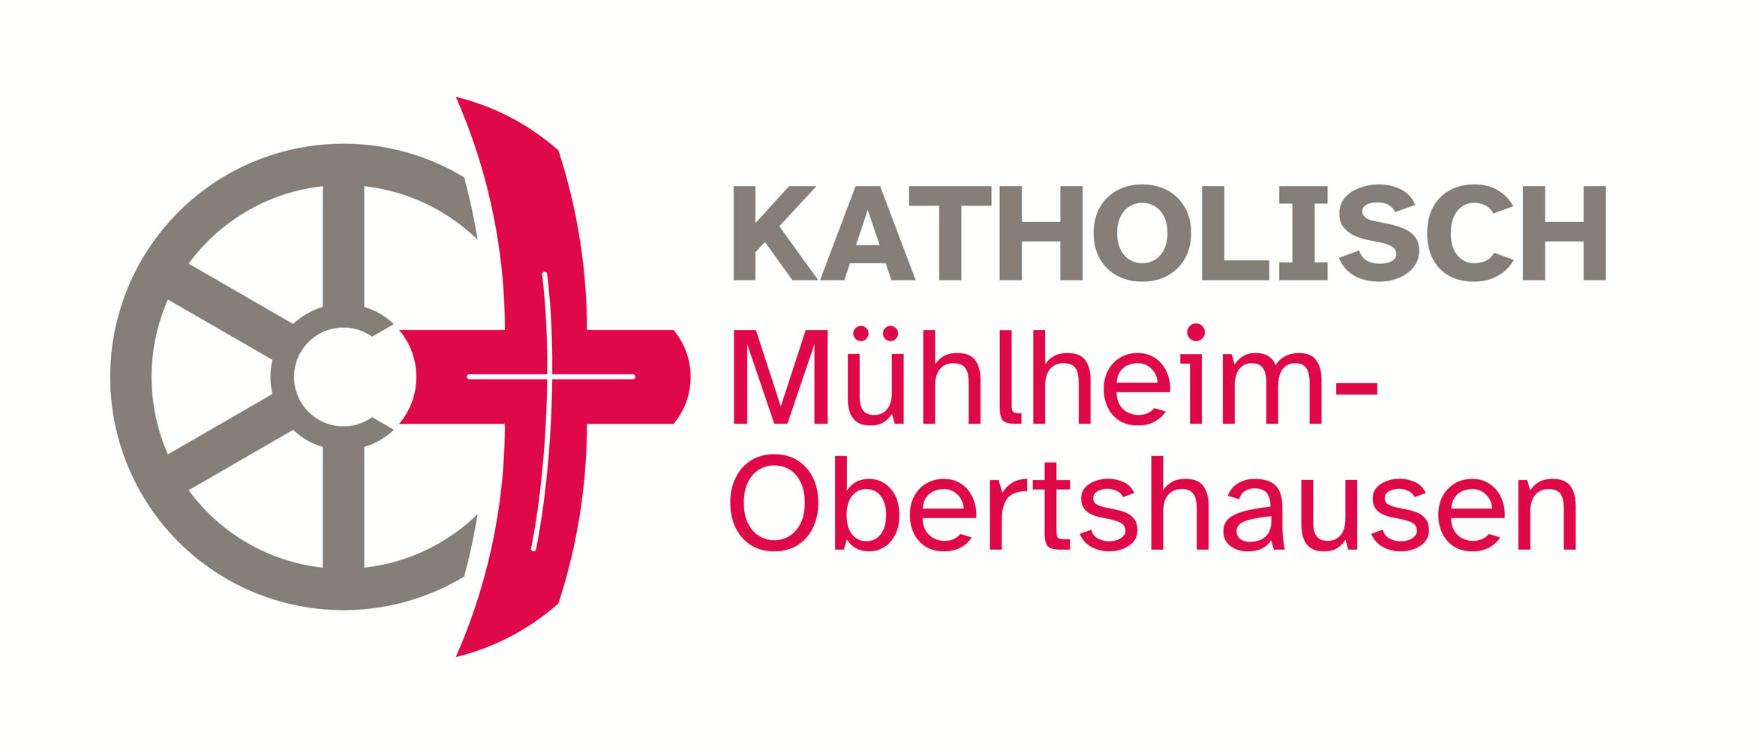 Mühlheim-Obersthausen_Widescreen (c) Bistum Mainz_Pastoralraum Mühlheim-Obertshausen